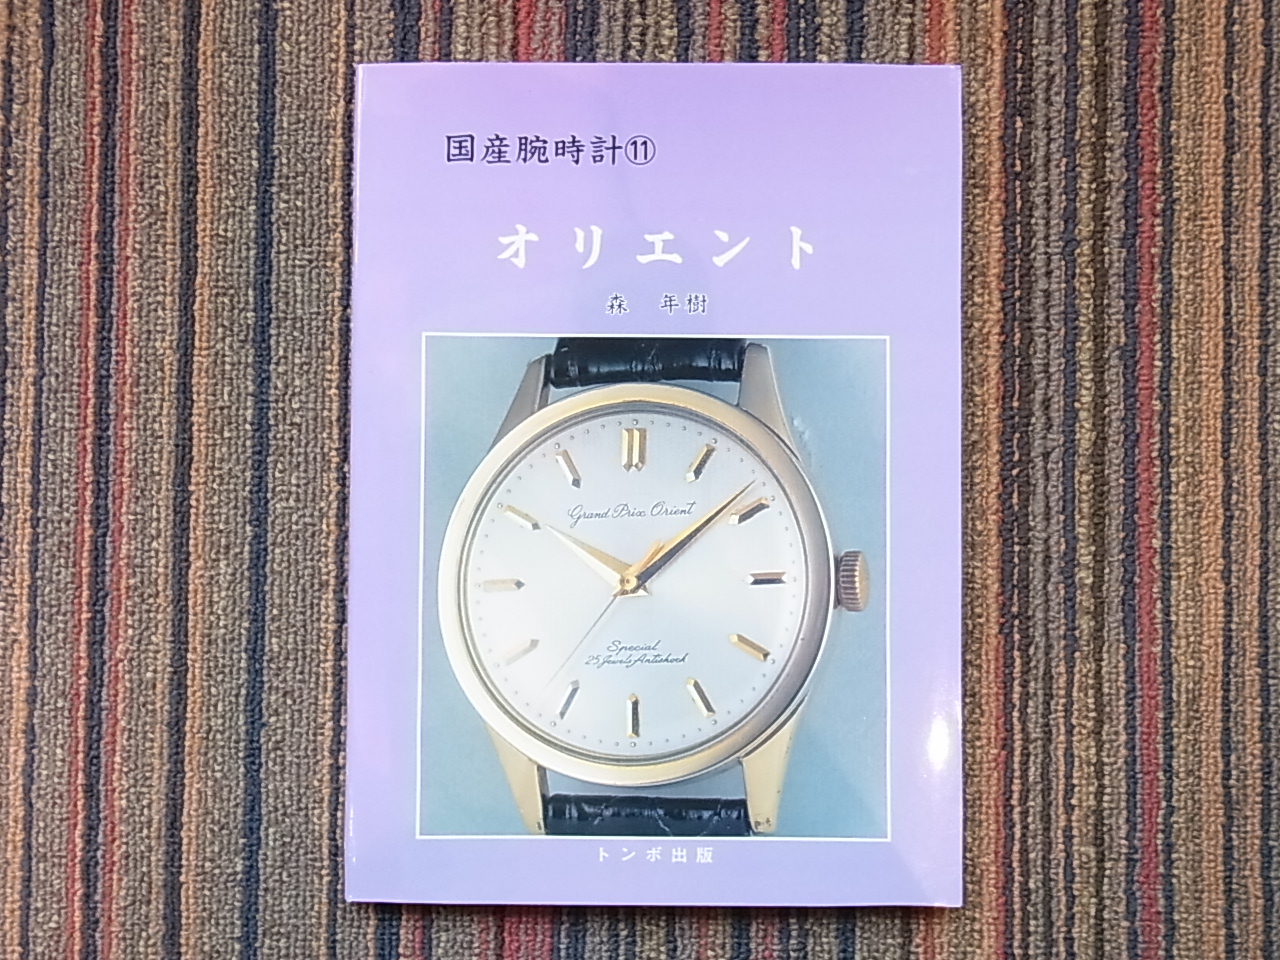 TB11] トンボ出版 国産腕時計⑪”オリエント”N.O.S [販売済]